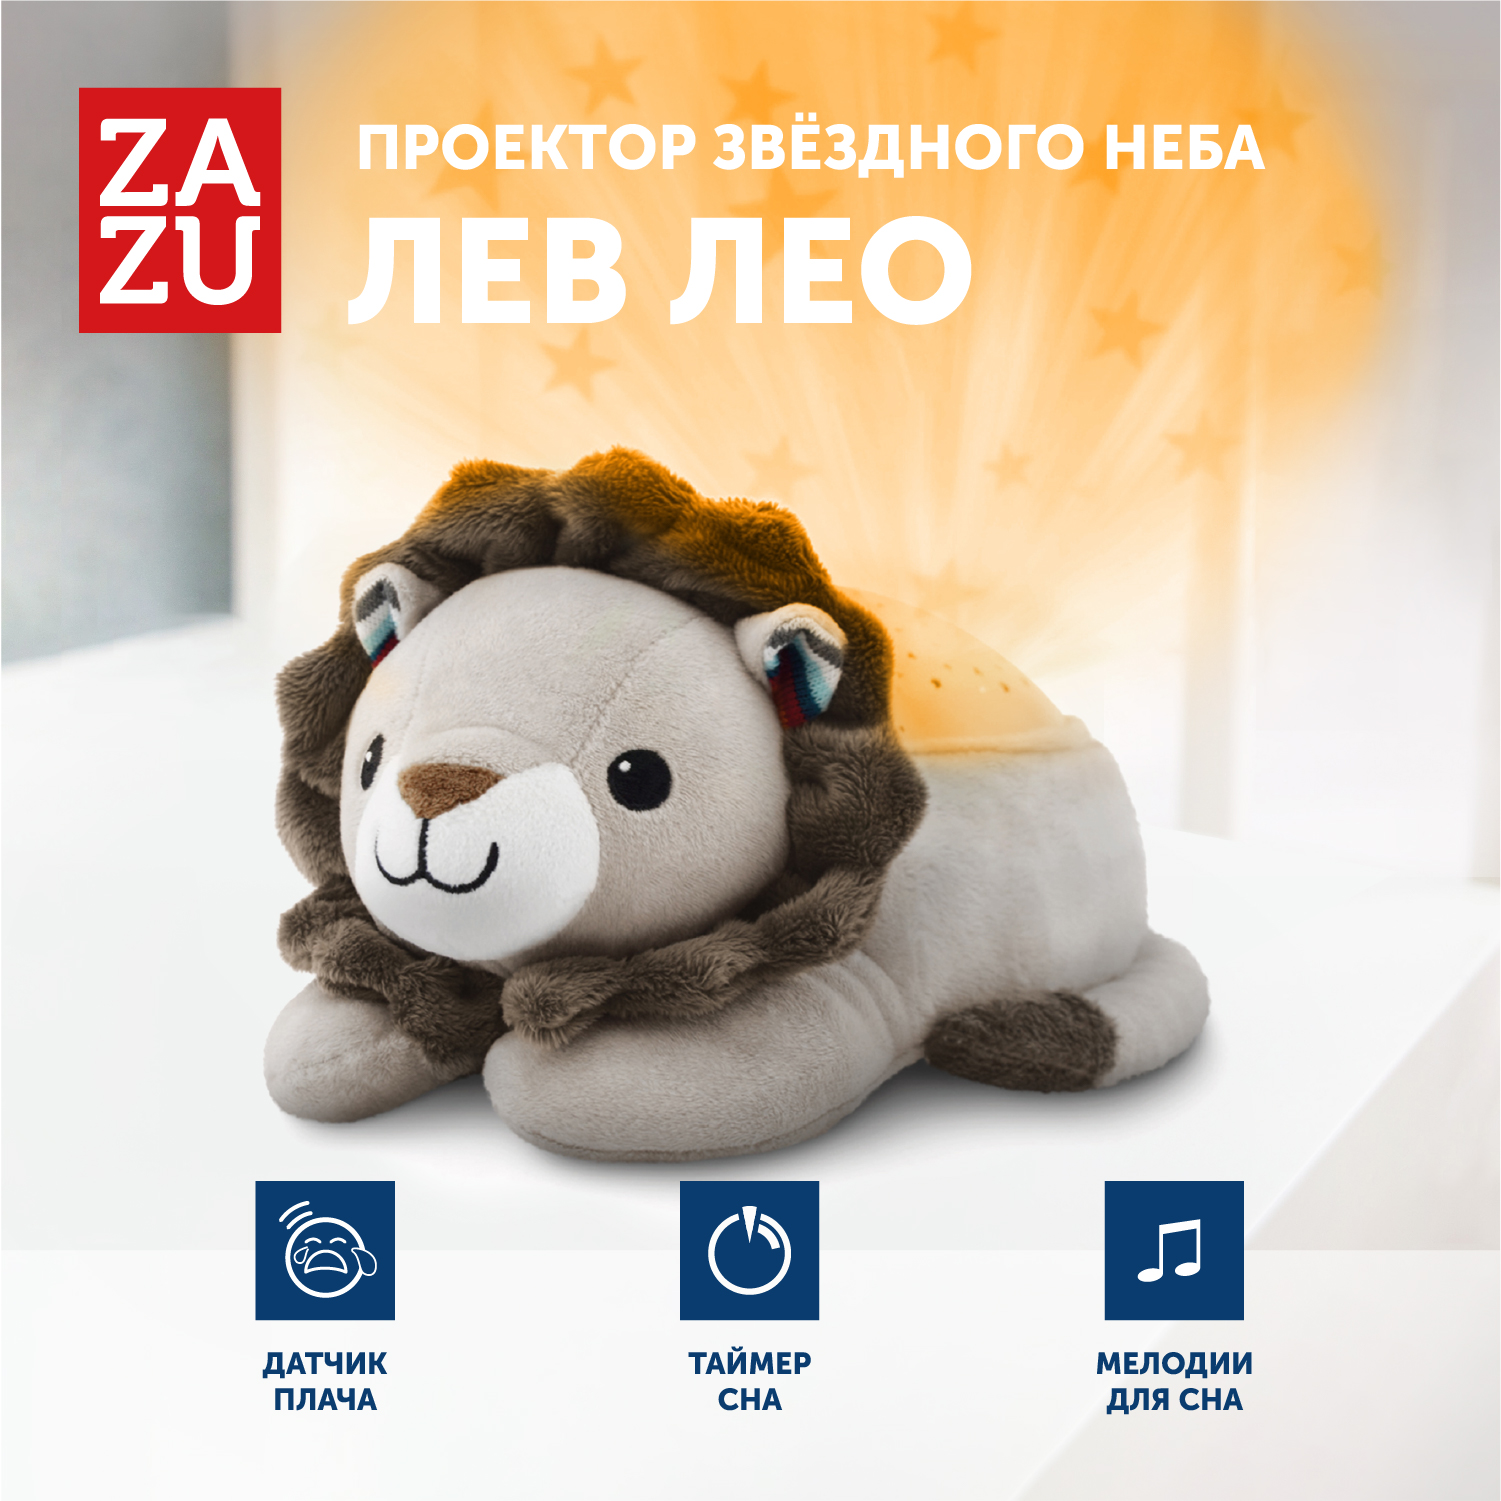 Музыкальная мягкая игрушка проектор ZAZU Львёнок Лео для малышей свет мария валик приятных снов 2192 95